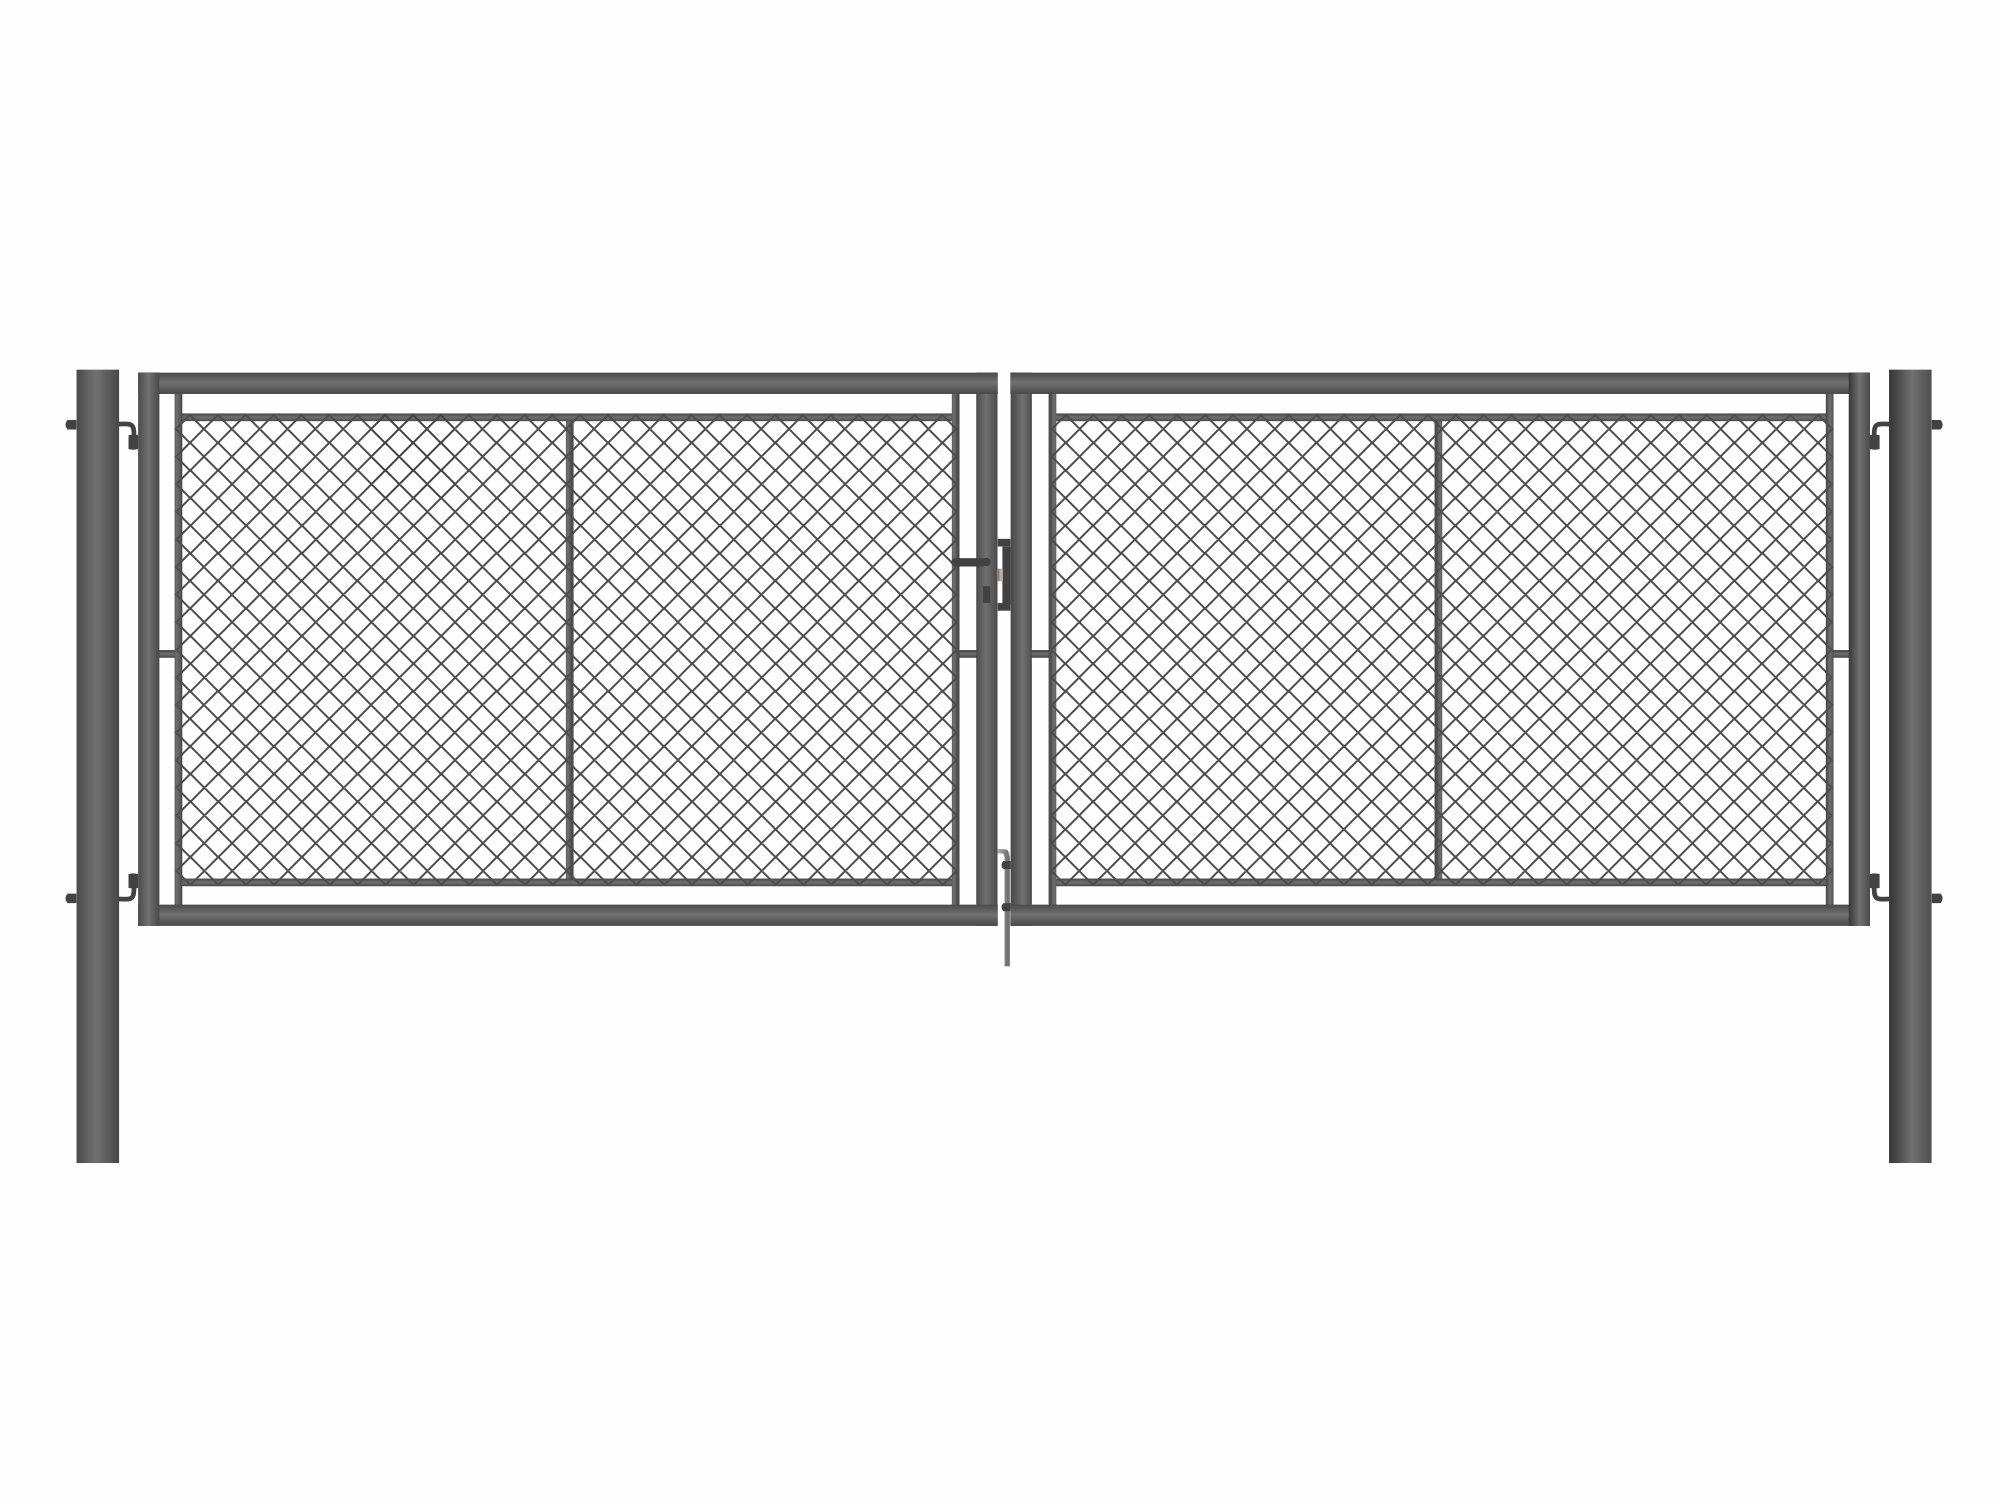 Brána zahradní dvoukřídlá antracit, výška 120 x 400 cm, FAB, s výplní klasického pletiva PLOTY Sklad5 9886 535